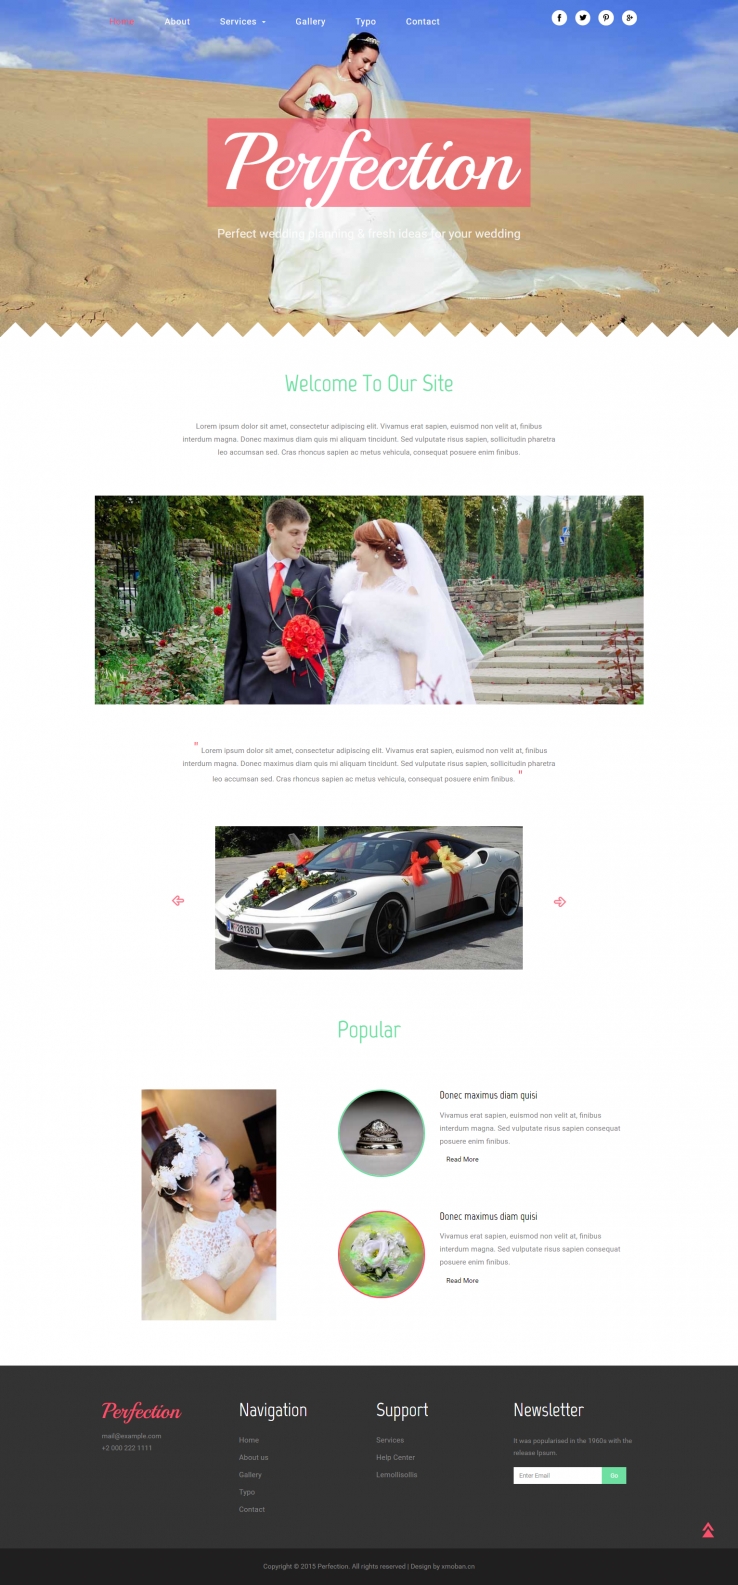 粉色欧美风格的婚礼策划服务企业网站源码下载